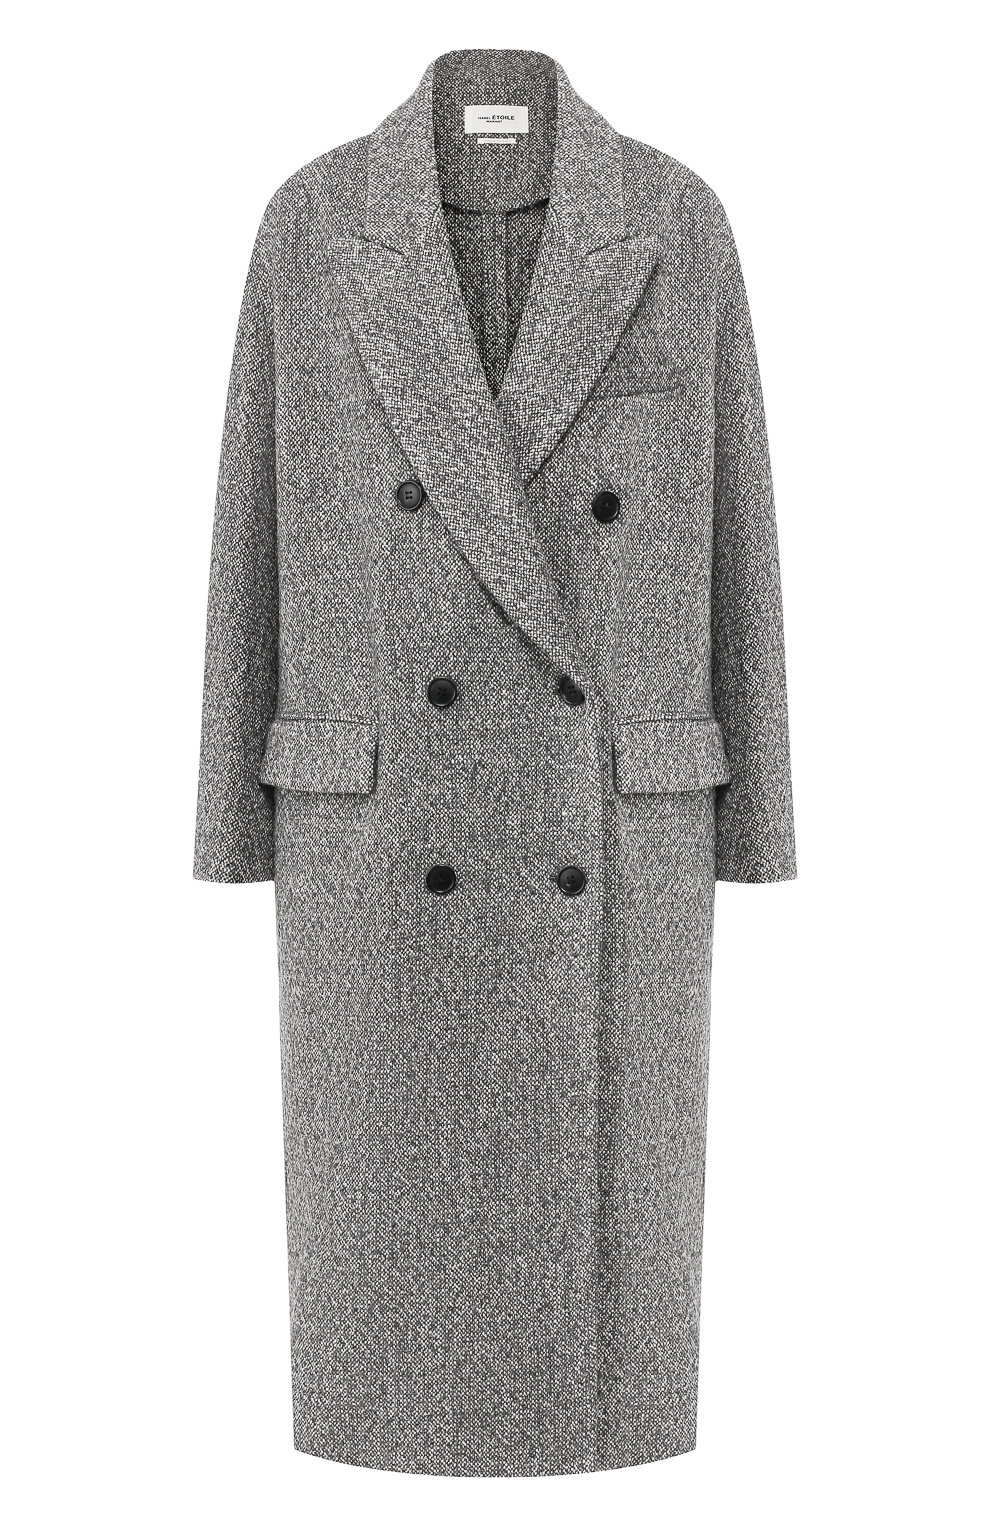 Что купить: универсальное пальто на осень (фото 12)